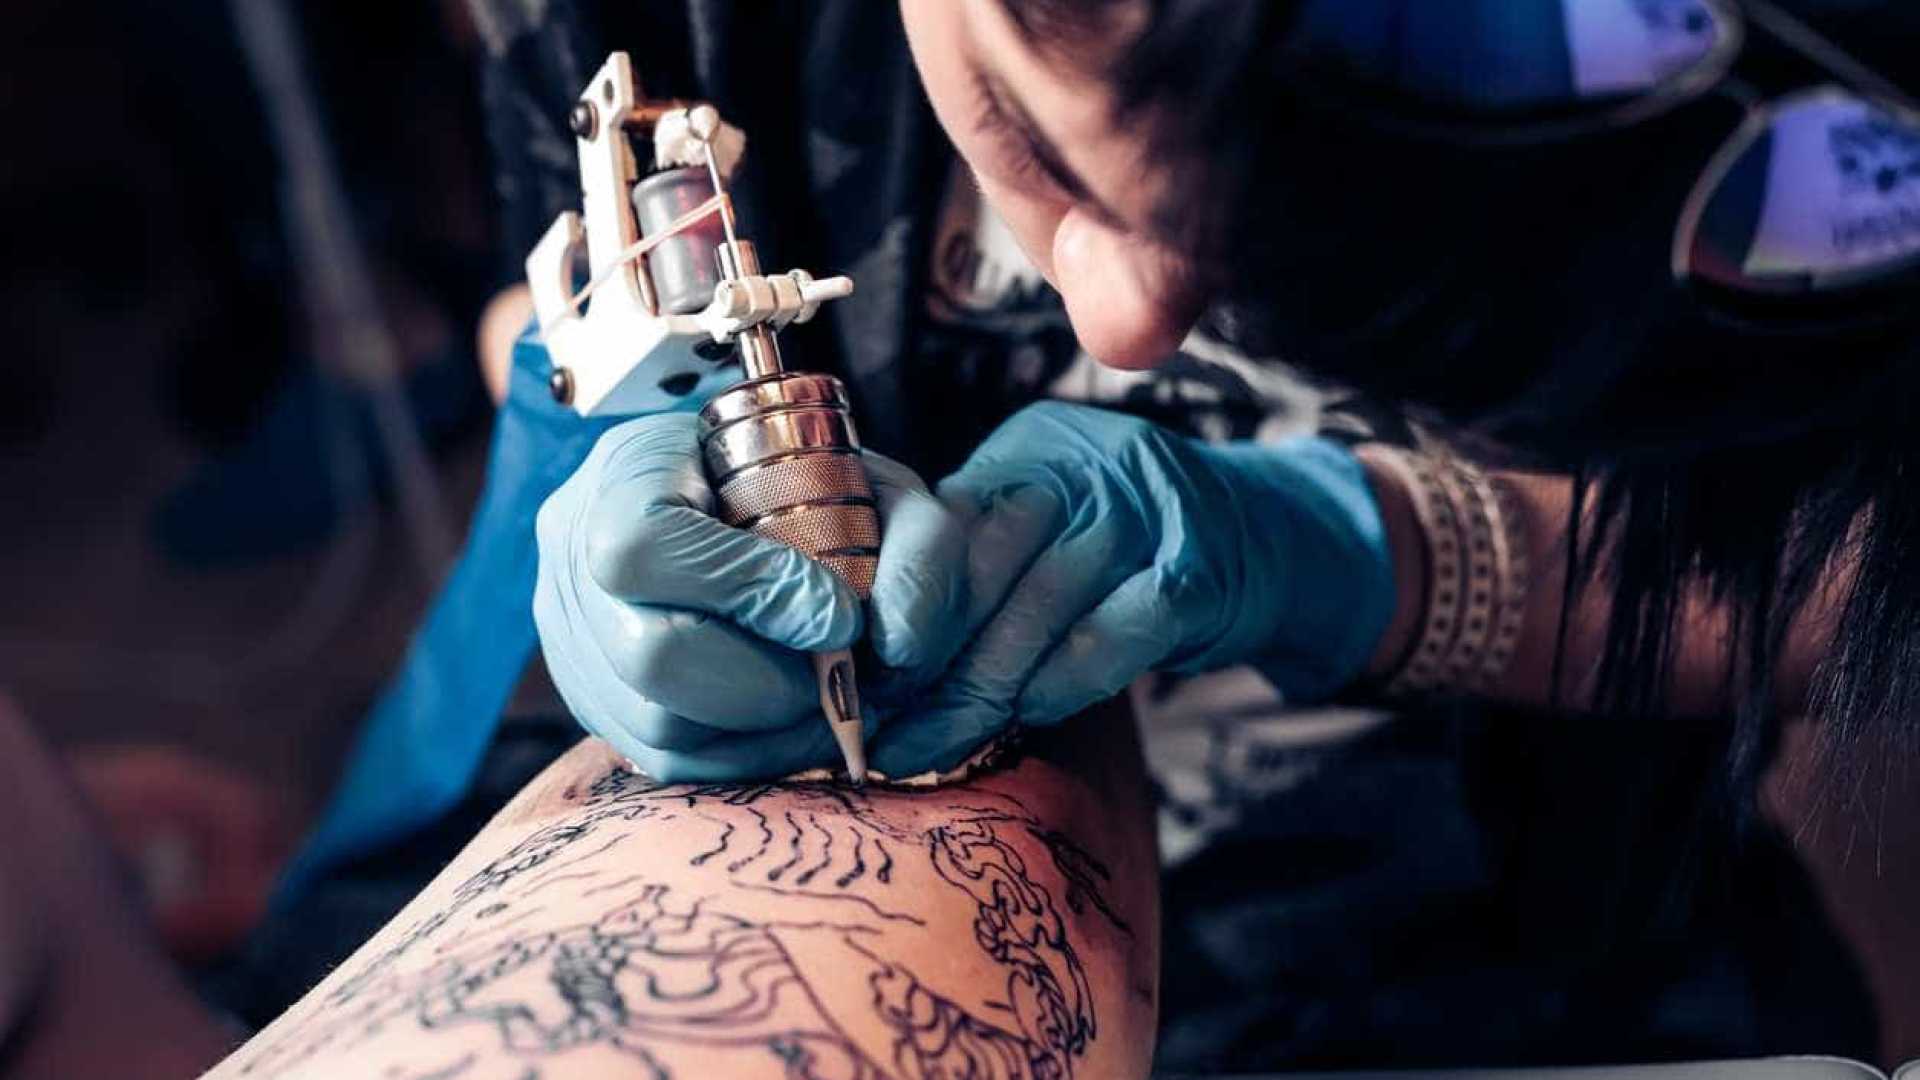 специалист по украшению тела при помощи татуировок